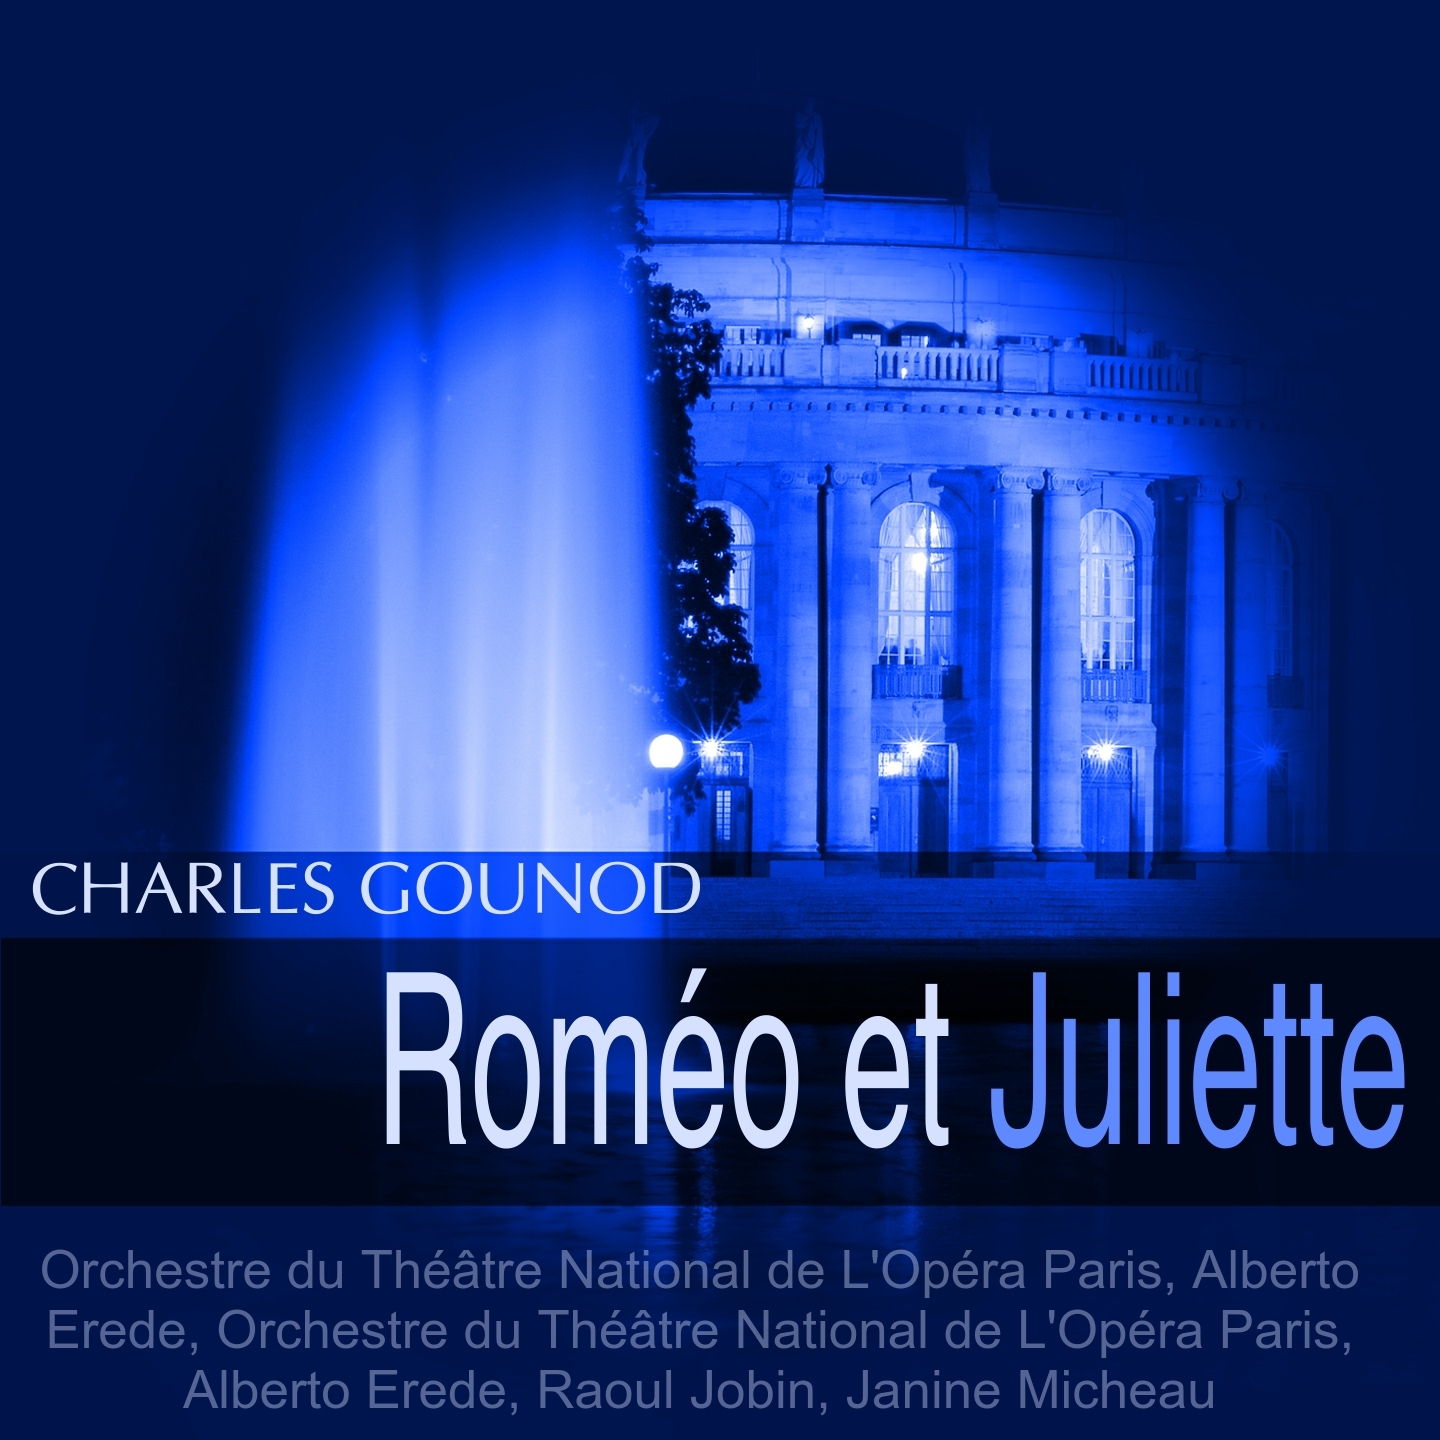 Rome o et Juliette, Act IV: " Va! Je t' ai pardonne" Juliette